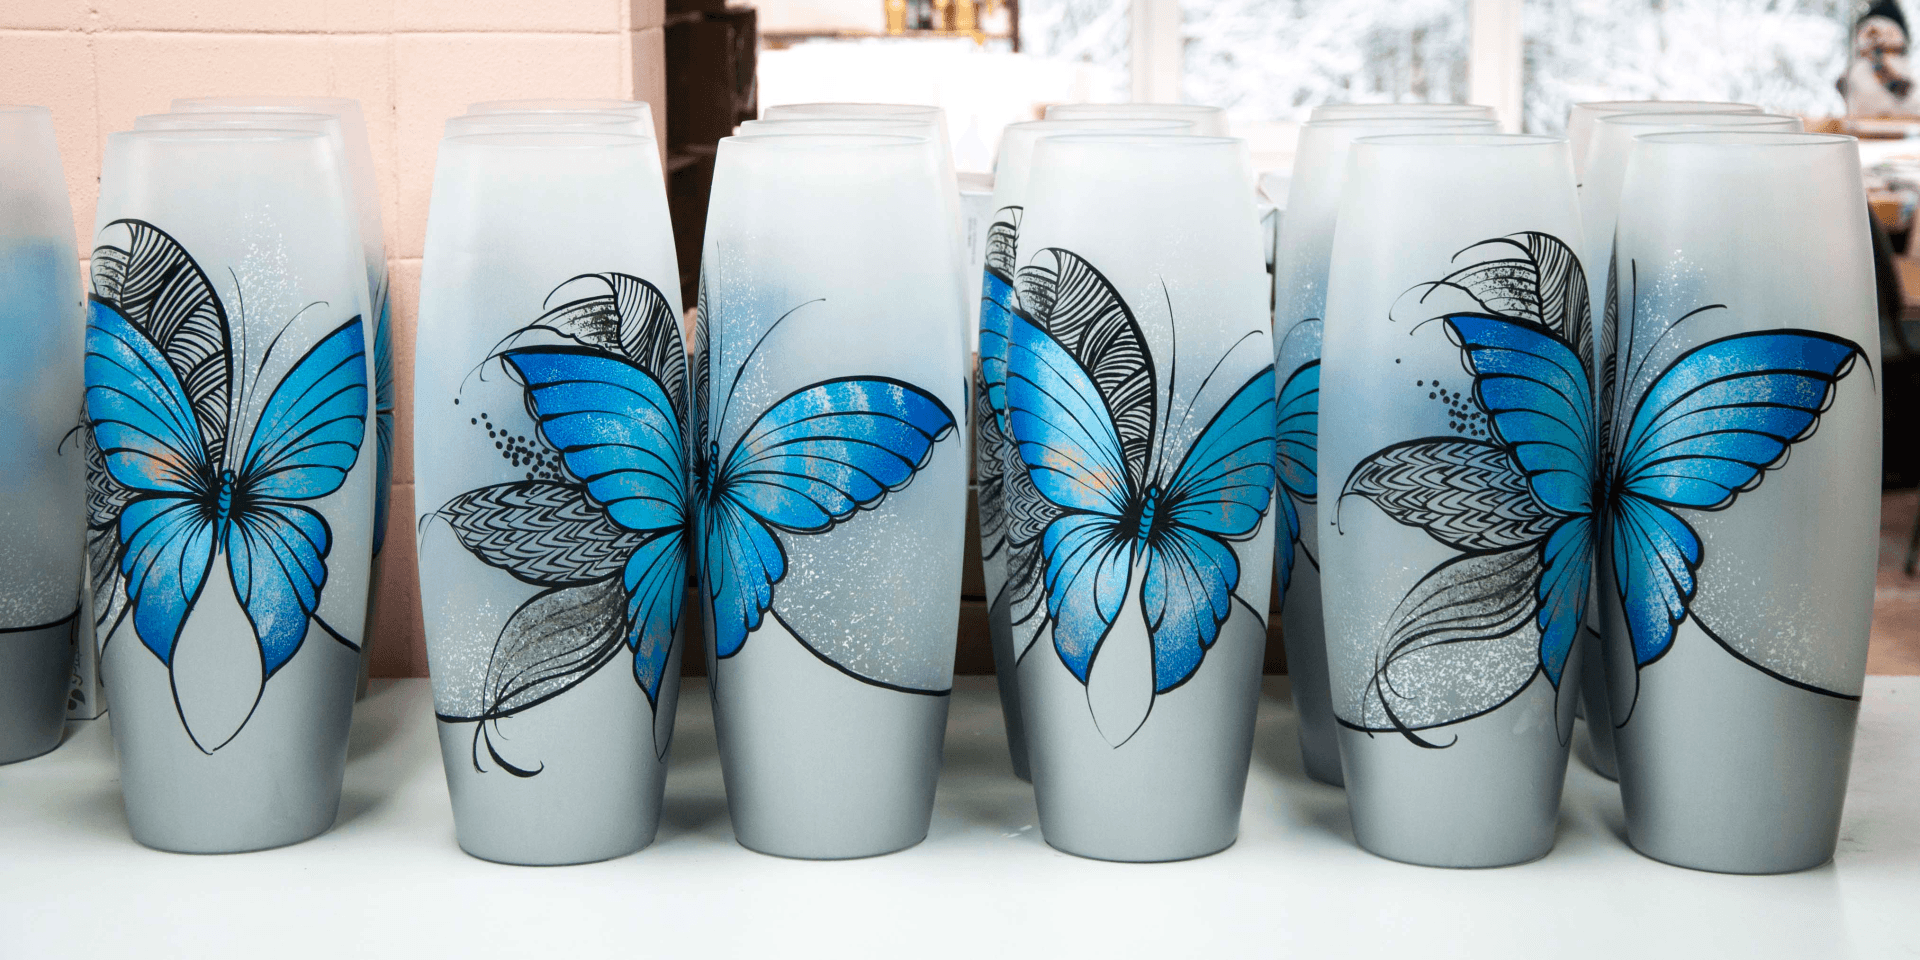 Blue butterfly floor Vase |  Large Handpainted Glass Vase for Flowers | Room Decor | Floor Vase 16 inch | 7124/400/sh227  